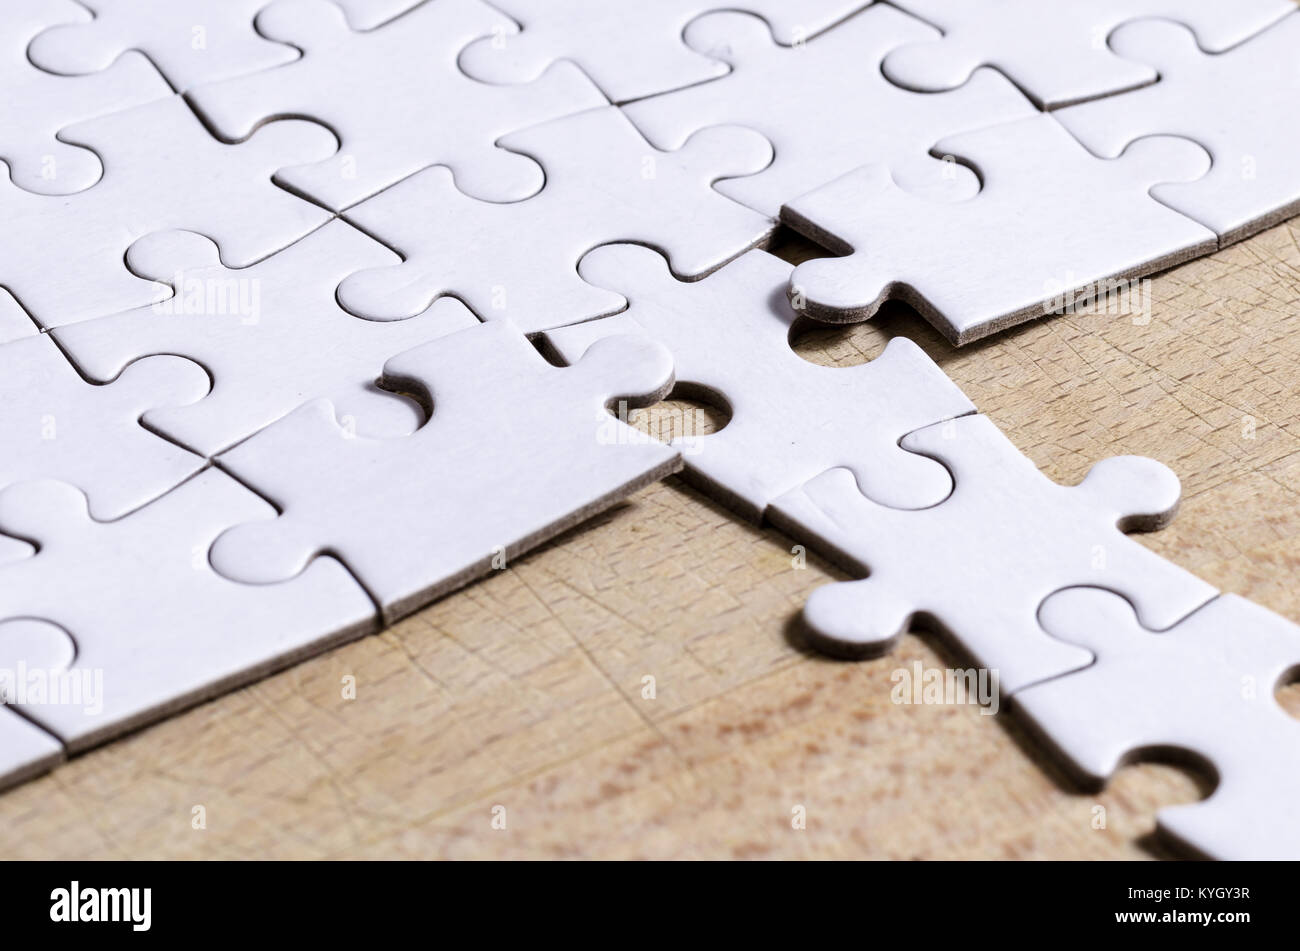 Bianco/jigsaw puzzle con una riga nella posizione sbagliata su un tavolo di legno sfondo, simbolo di problem solving e nuova visione Foto Stock